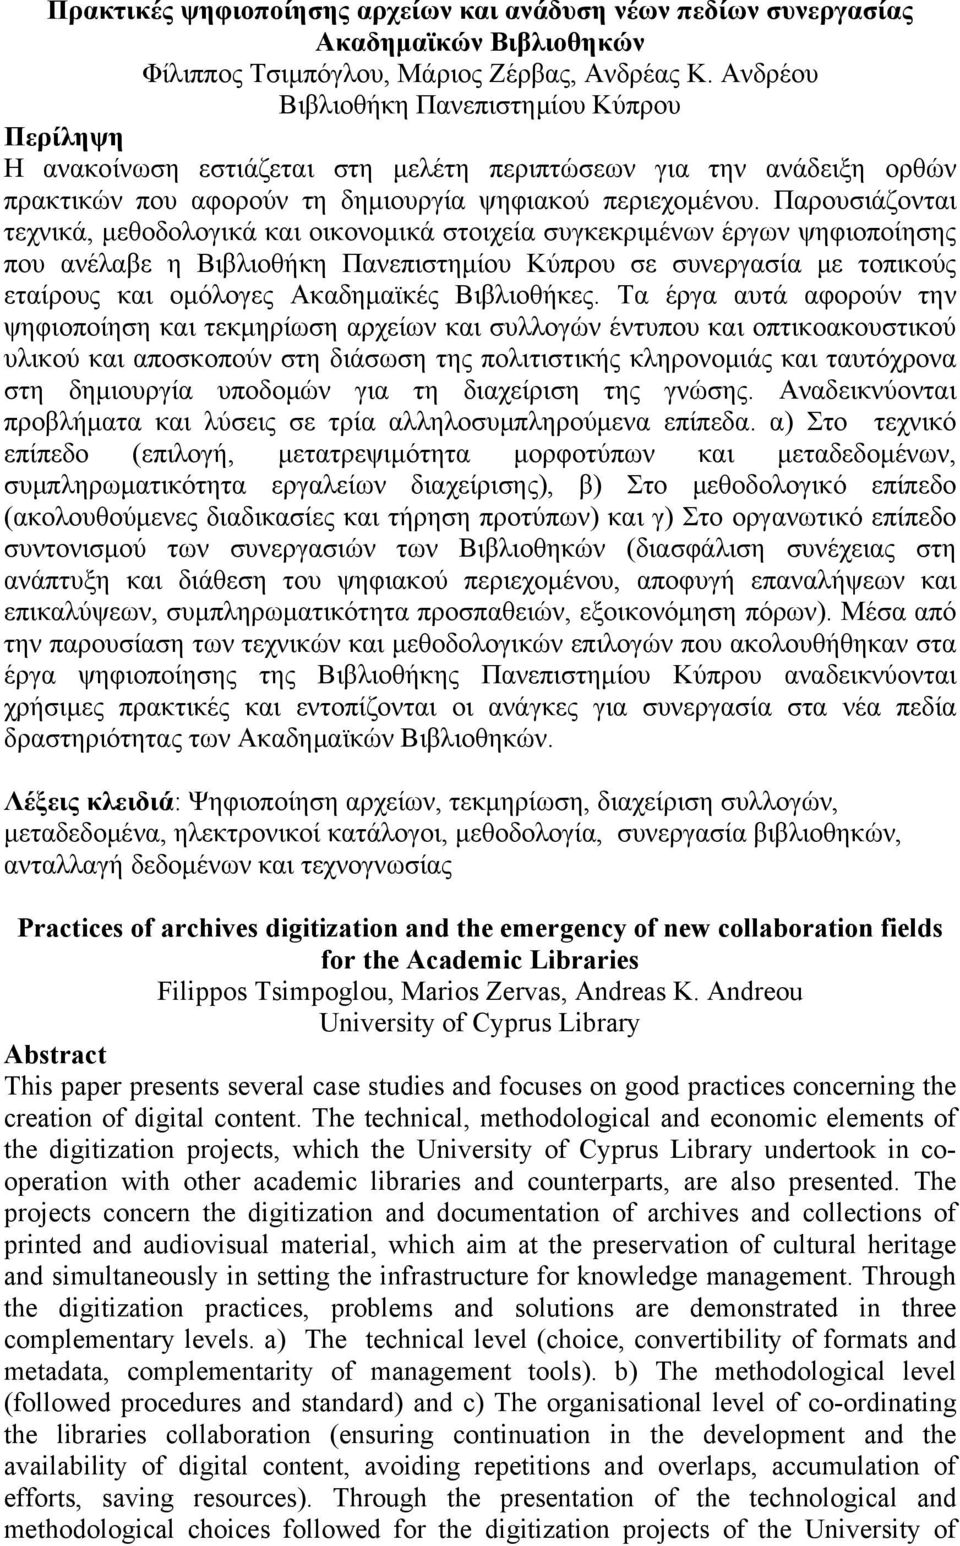 Παρουσιάζονται τεχνικά, μεθοδολογικά και οικονομικά στοιχεία συγκεκριμένων έργων ψηφιοποίησης που ανέλαβε η Βιβλιοθήκη Πανεπιστημίου Κύπρου σε συνεργασία με τοπικούς εταίρους και ομόλογες Ακαδημαϊκές